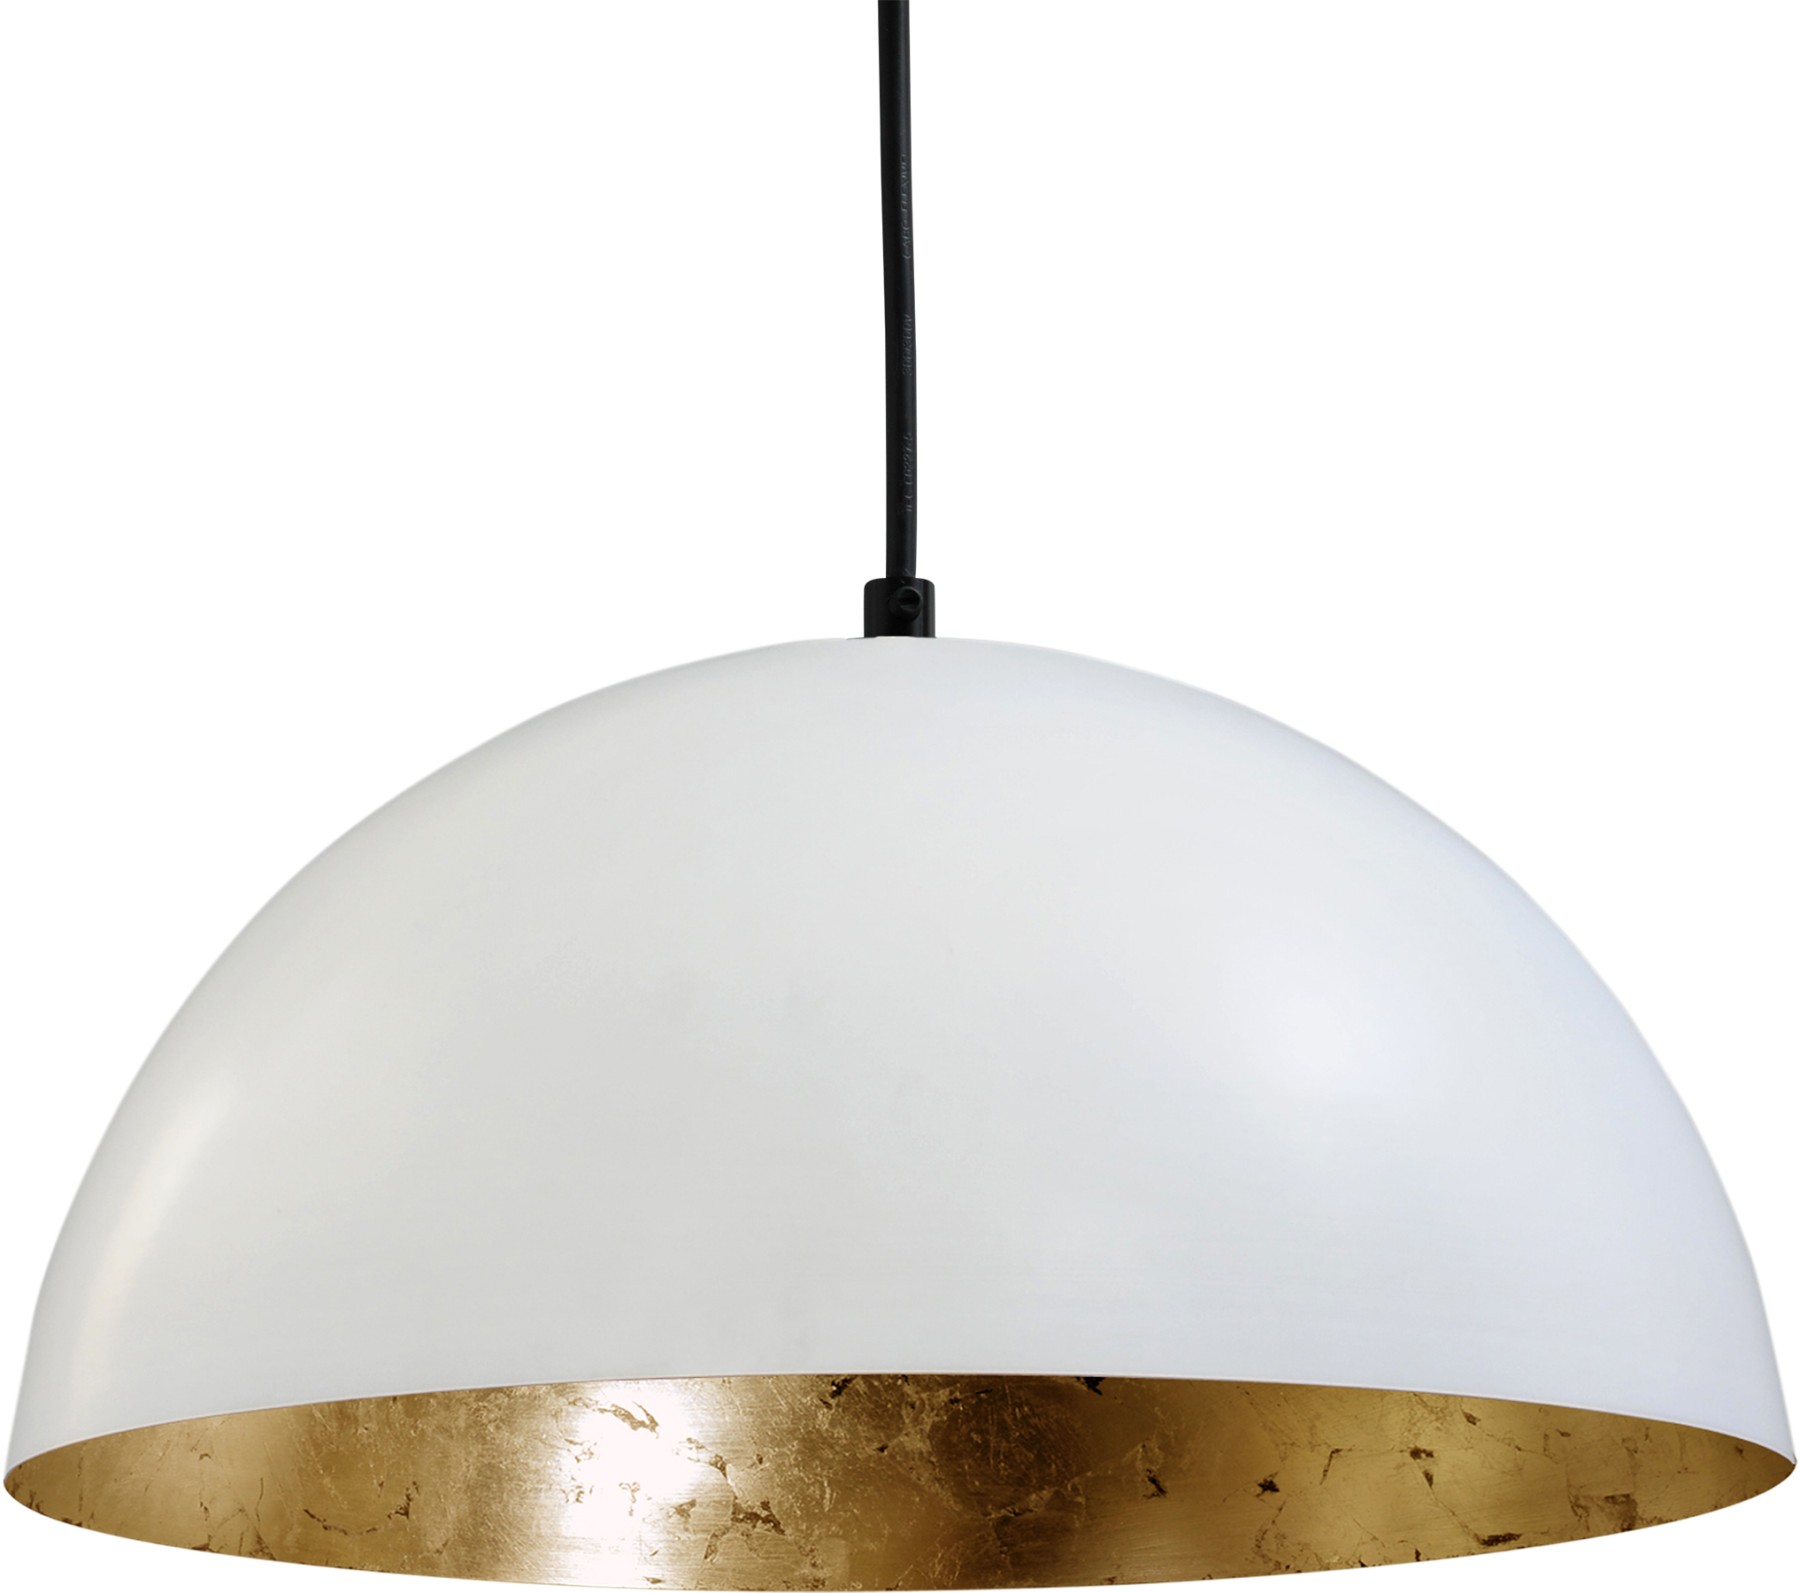 Pendelleuchte gold-weiß, Industrielampe/ Retro-style, Schirm-Ø: 30 cm